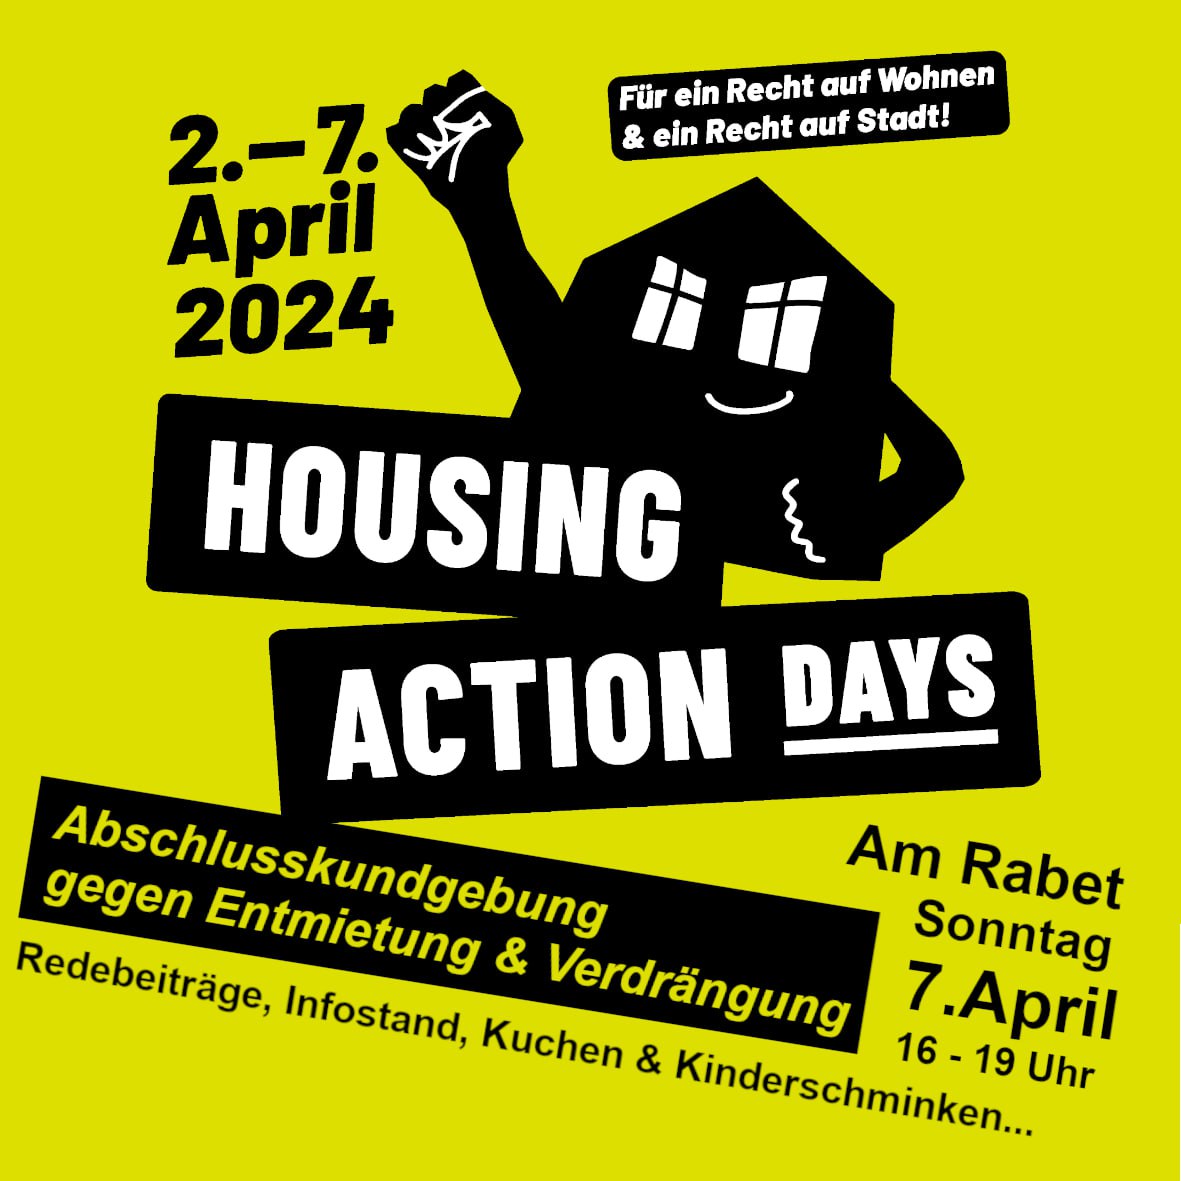 Abschlusskundgebung - Housing Action Days